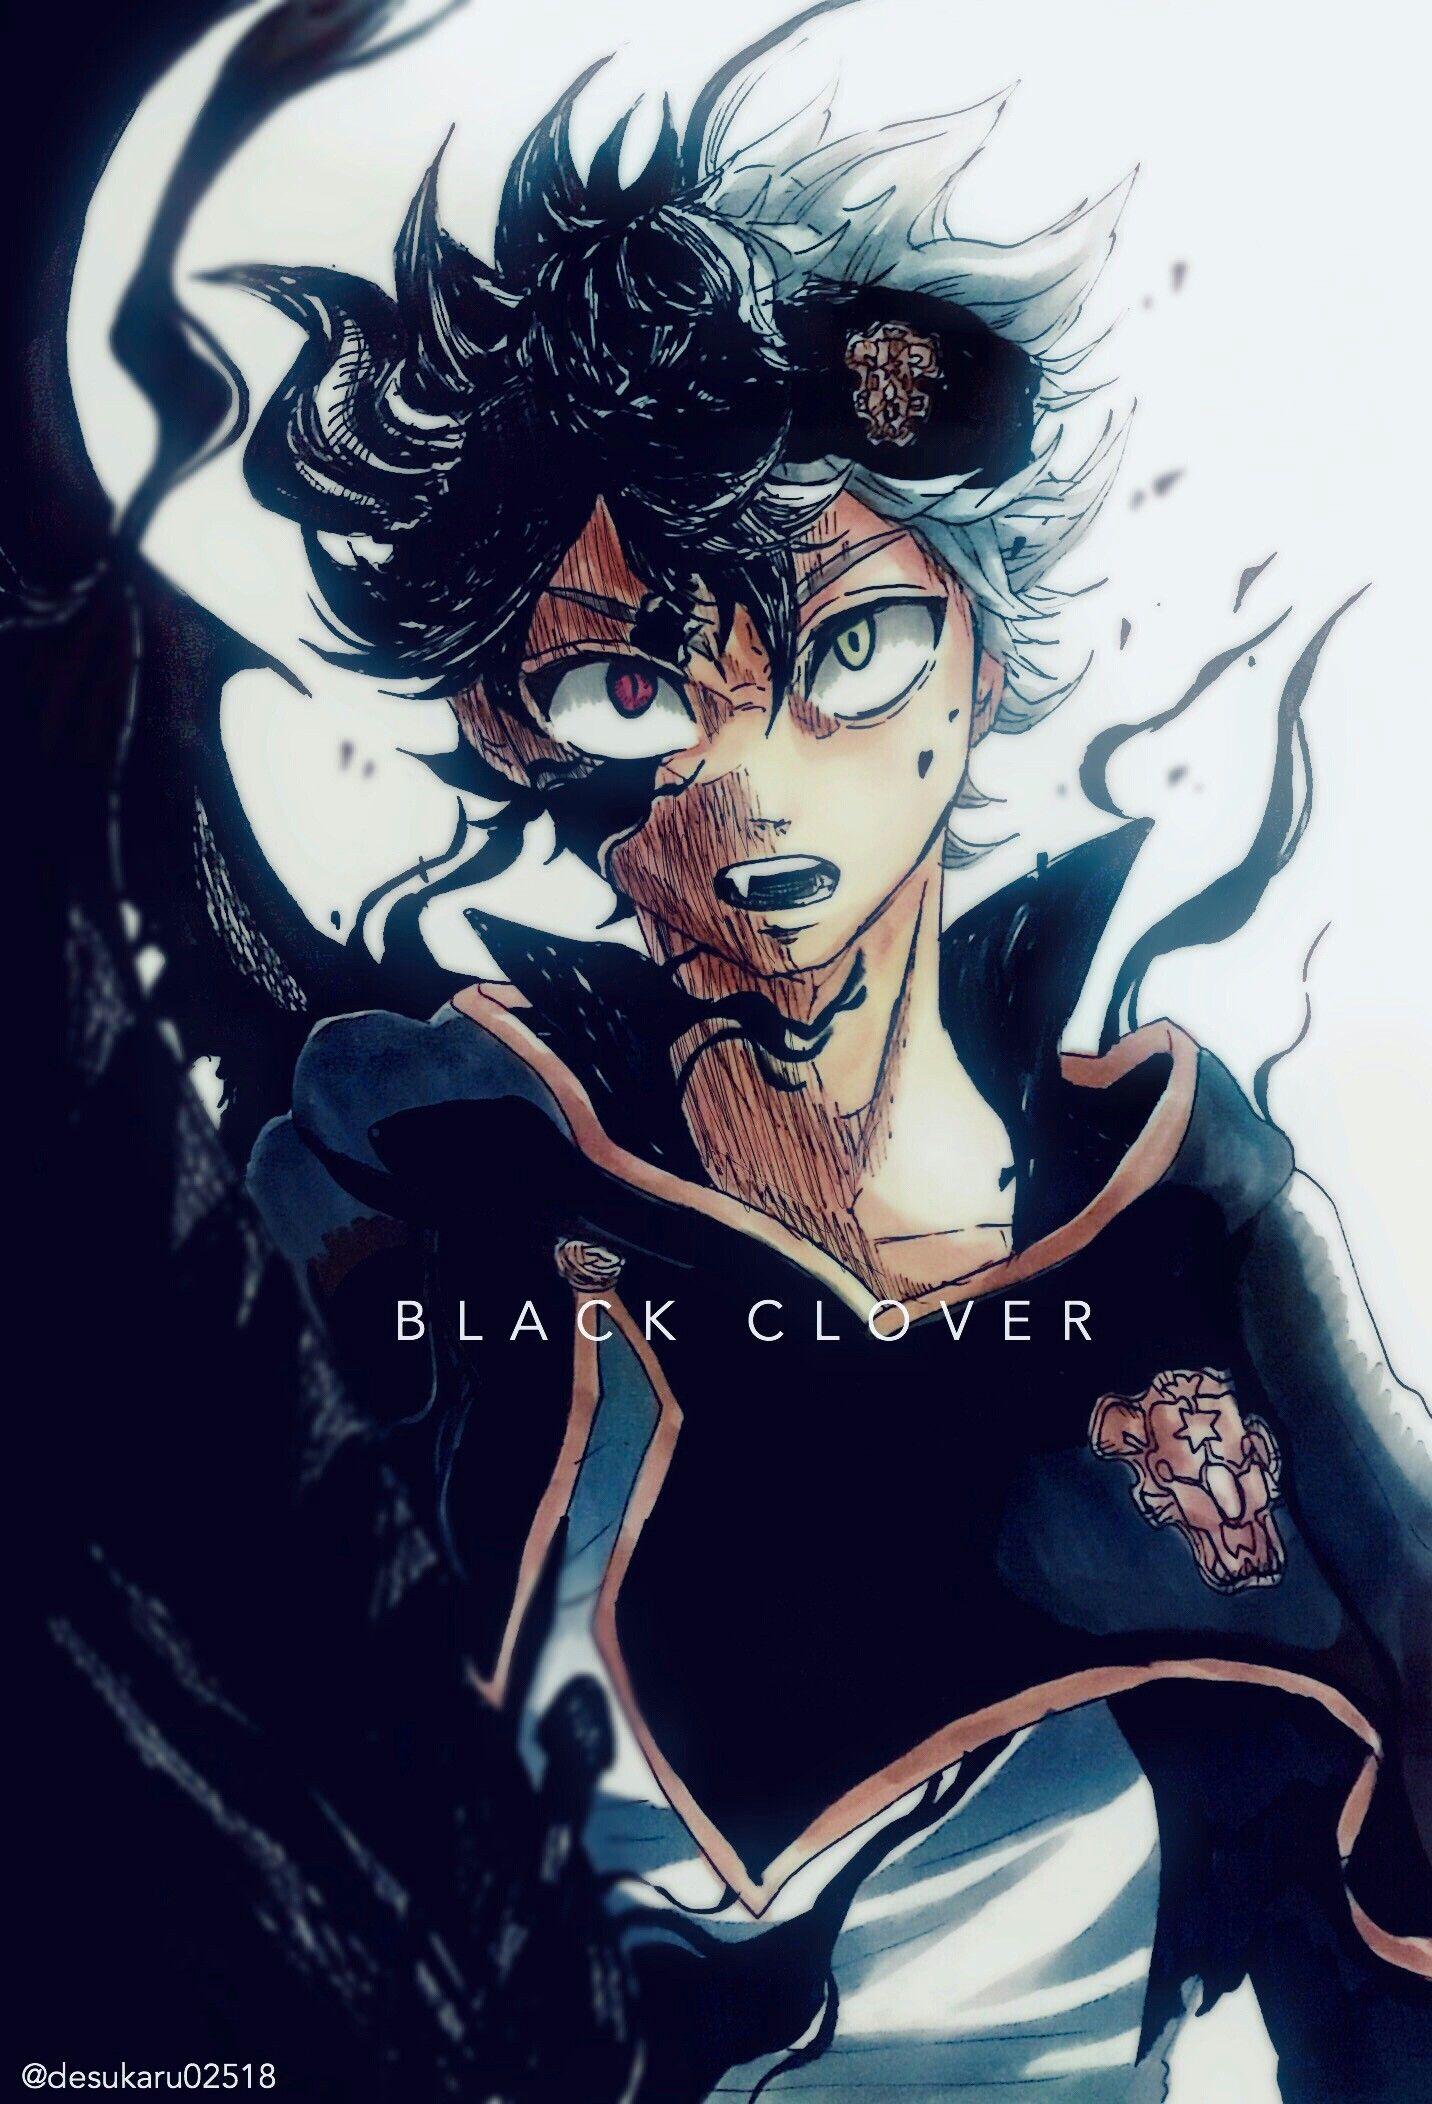 Asta Black Clover Wallpaper 4k Anime Wallpapers